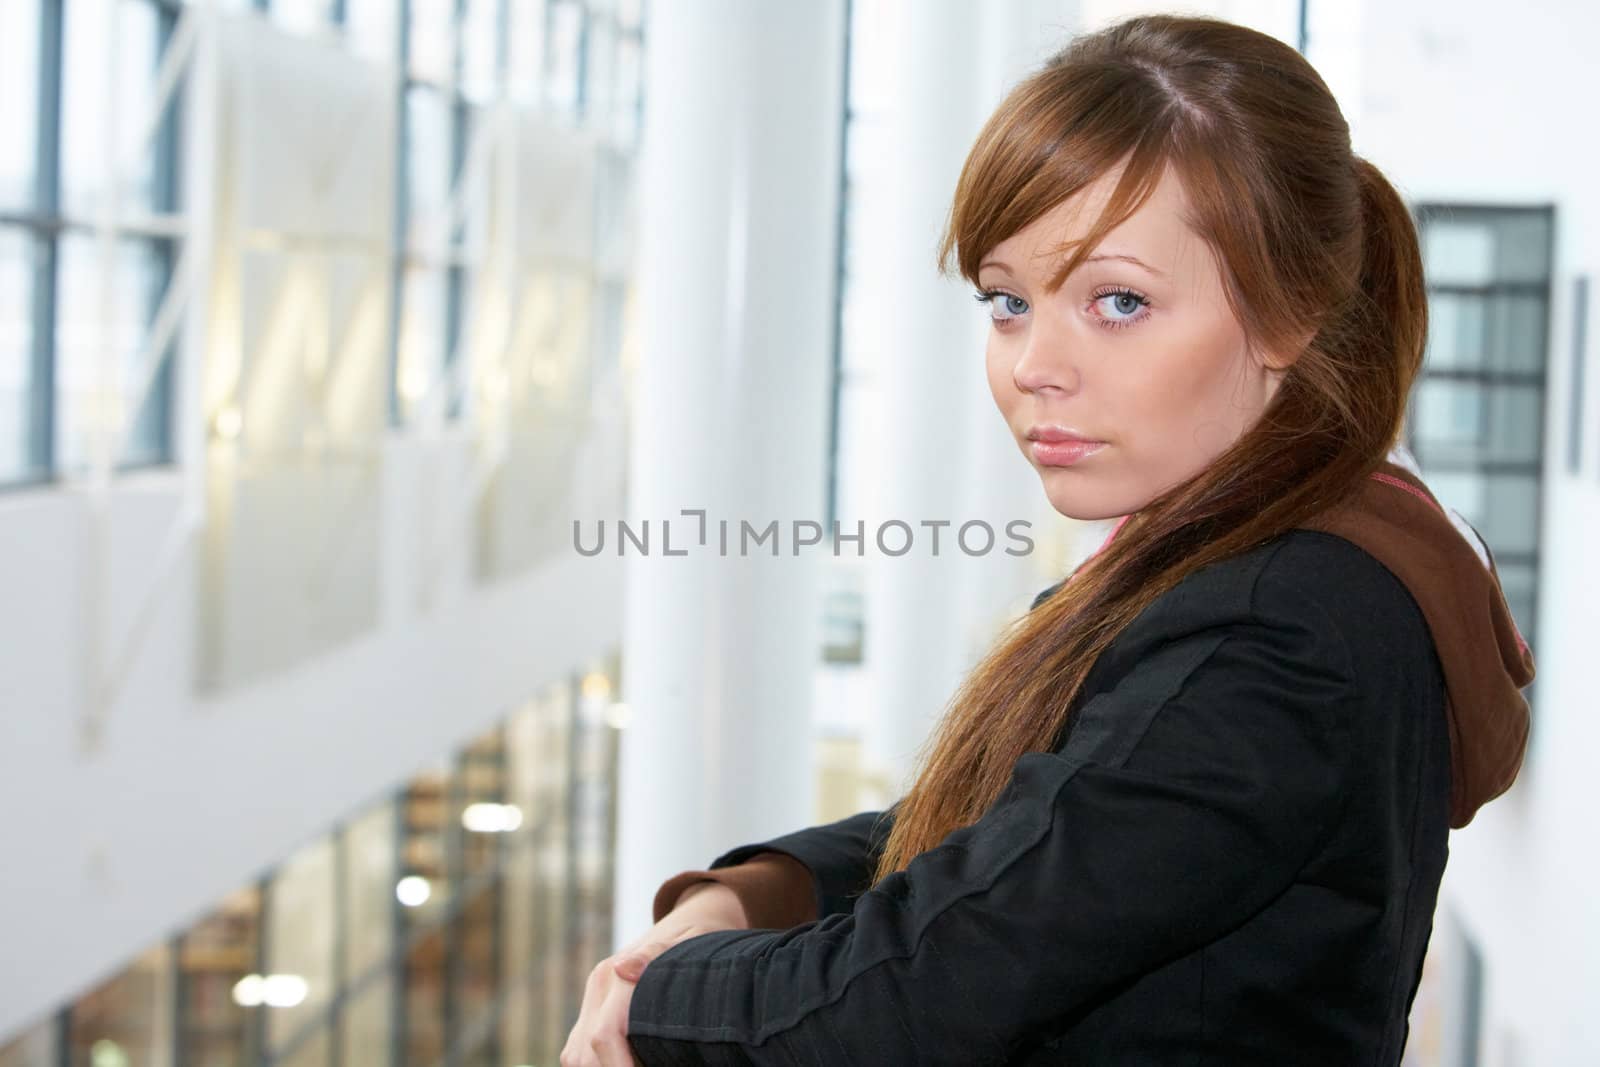 Teenage girl in modern building, looking at camera